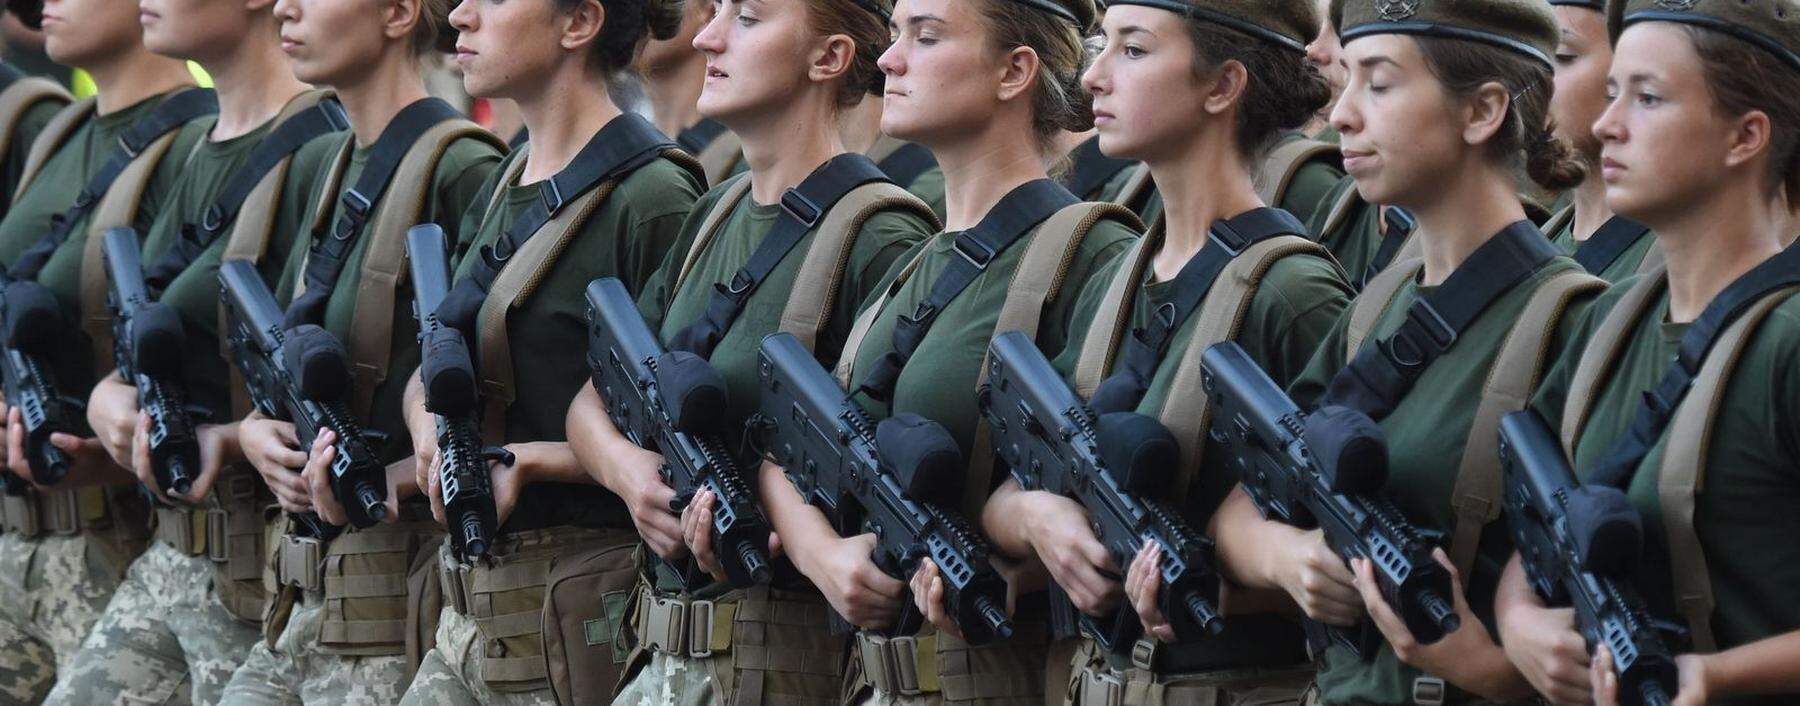 Soldatinnen der ukrainischen Armee vor dem ukrainischen Unabhängigkeitstag im Jahr 2018. Heuer wurden aus Angst vor Anschlägen jegliche Veranstaltungen abgesagt. 